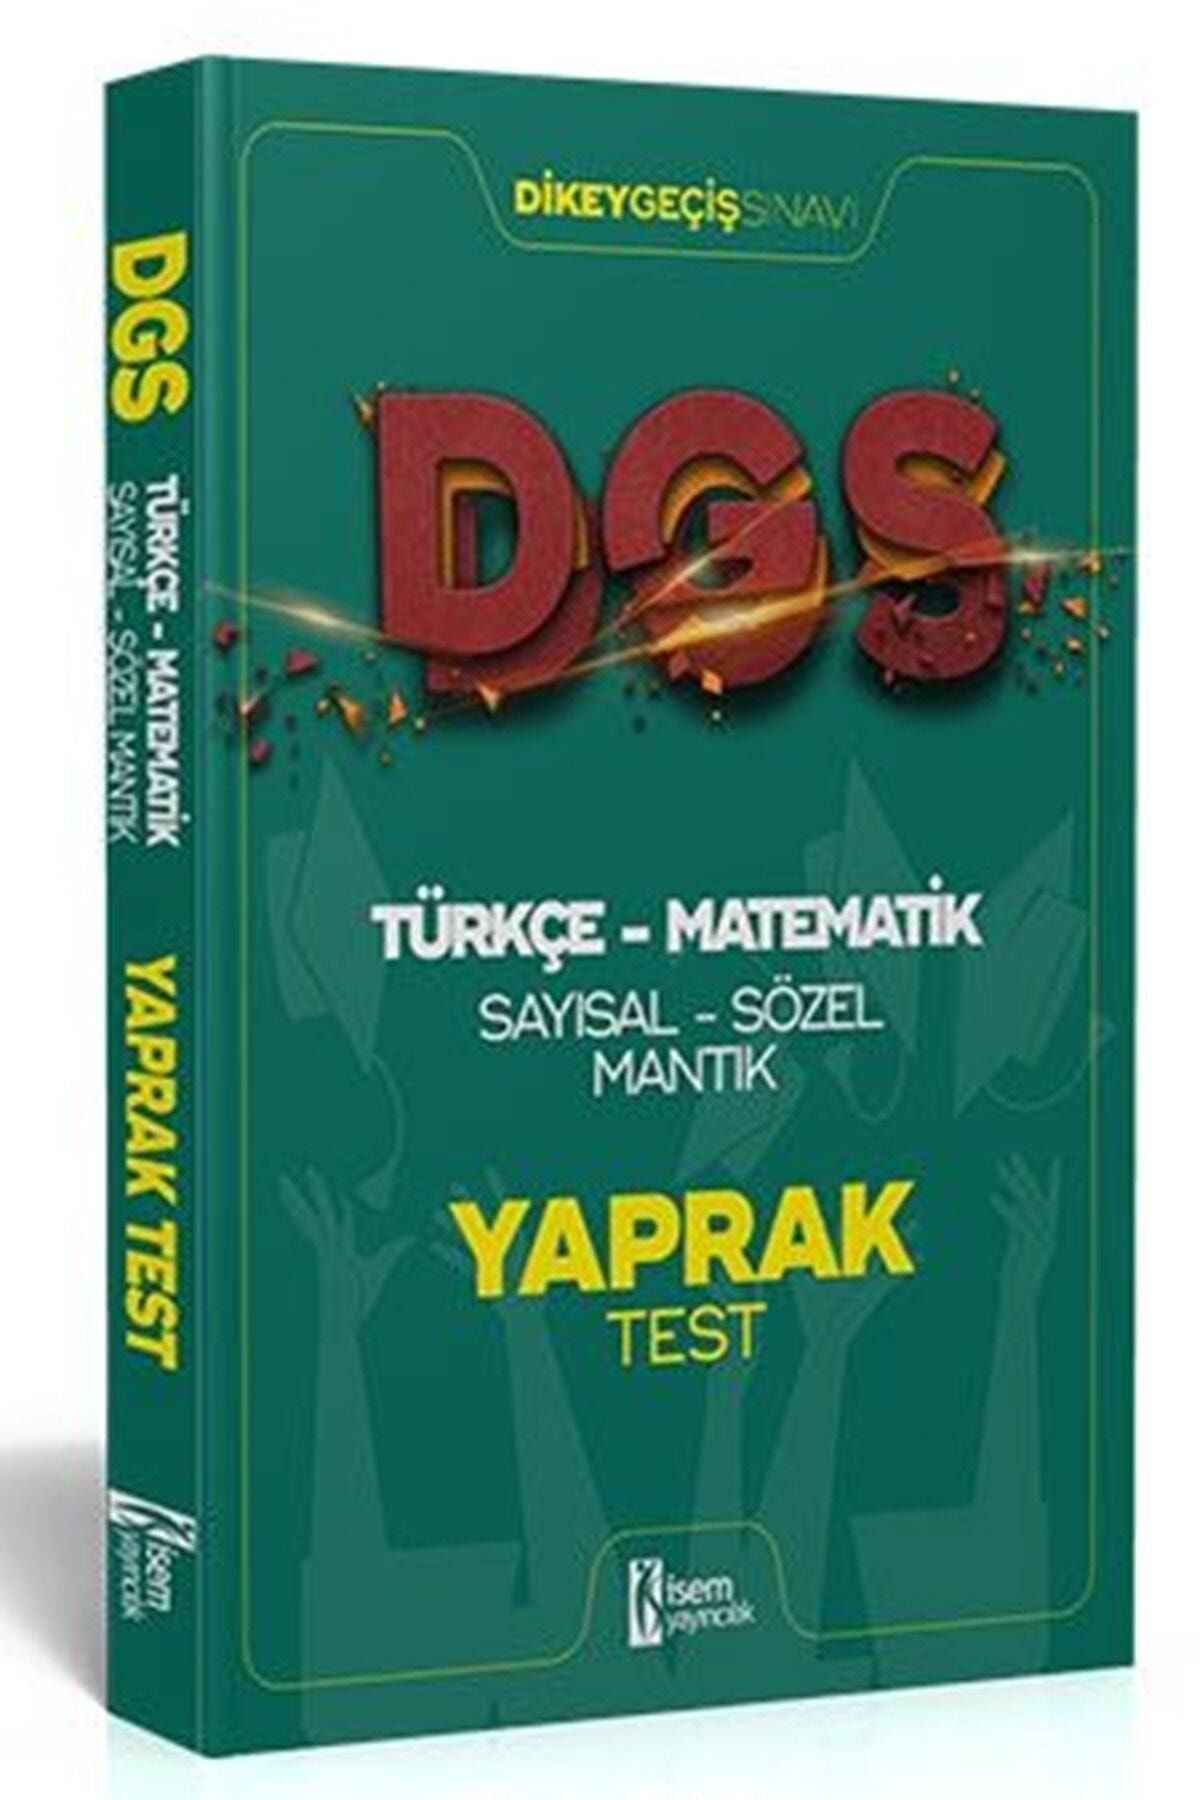 İsem Yayıncılık Isem 2021 Dgs Türkçe - Matematik Sayısal - Sözel Mantık Çek Kopar Yaprak Test